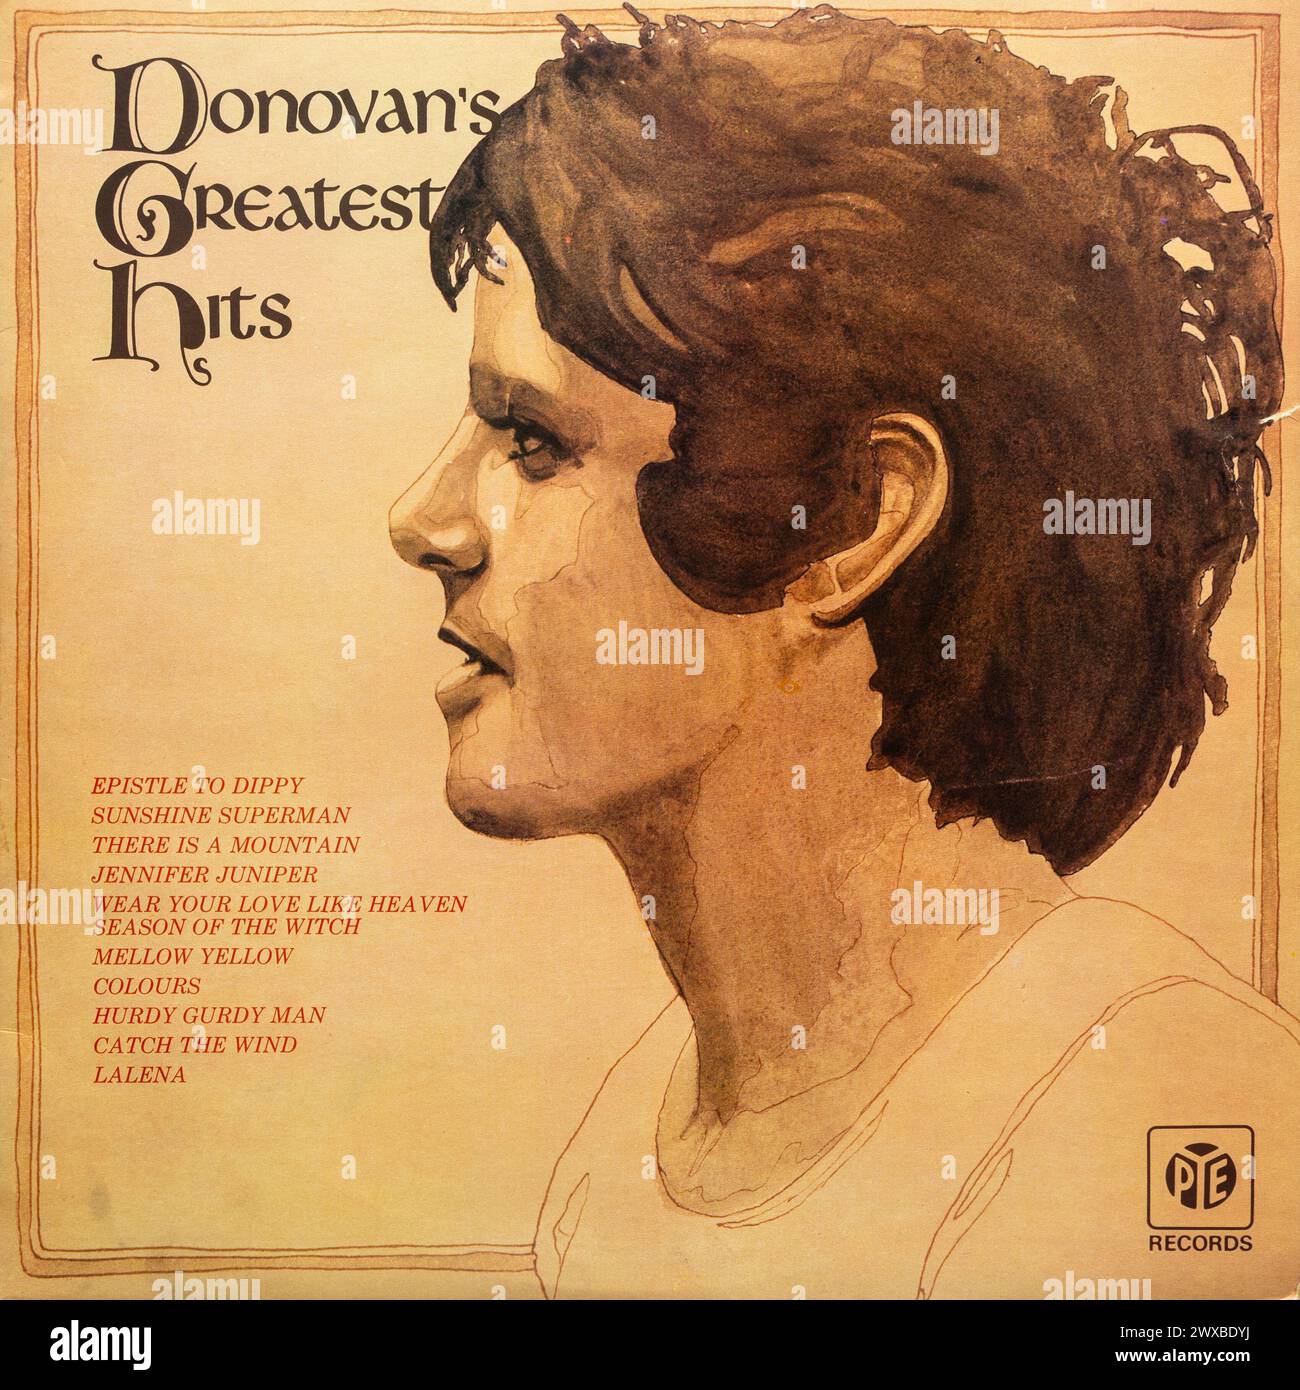 Donovan's Greatest Hits vinyl LP record album cover Stock Photo